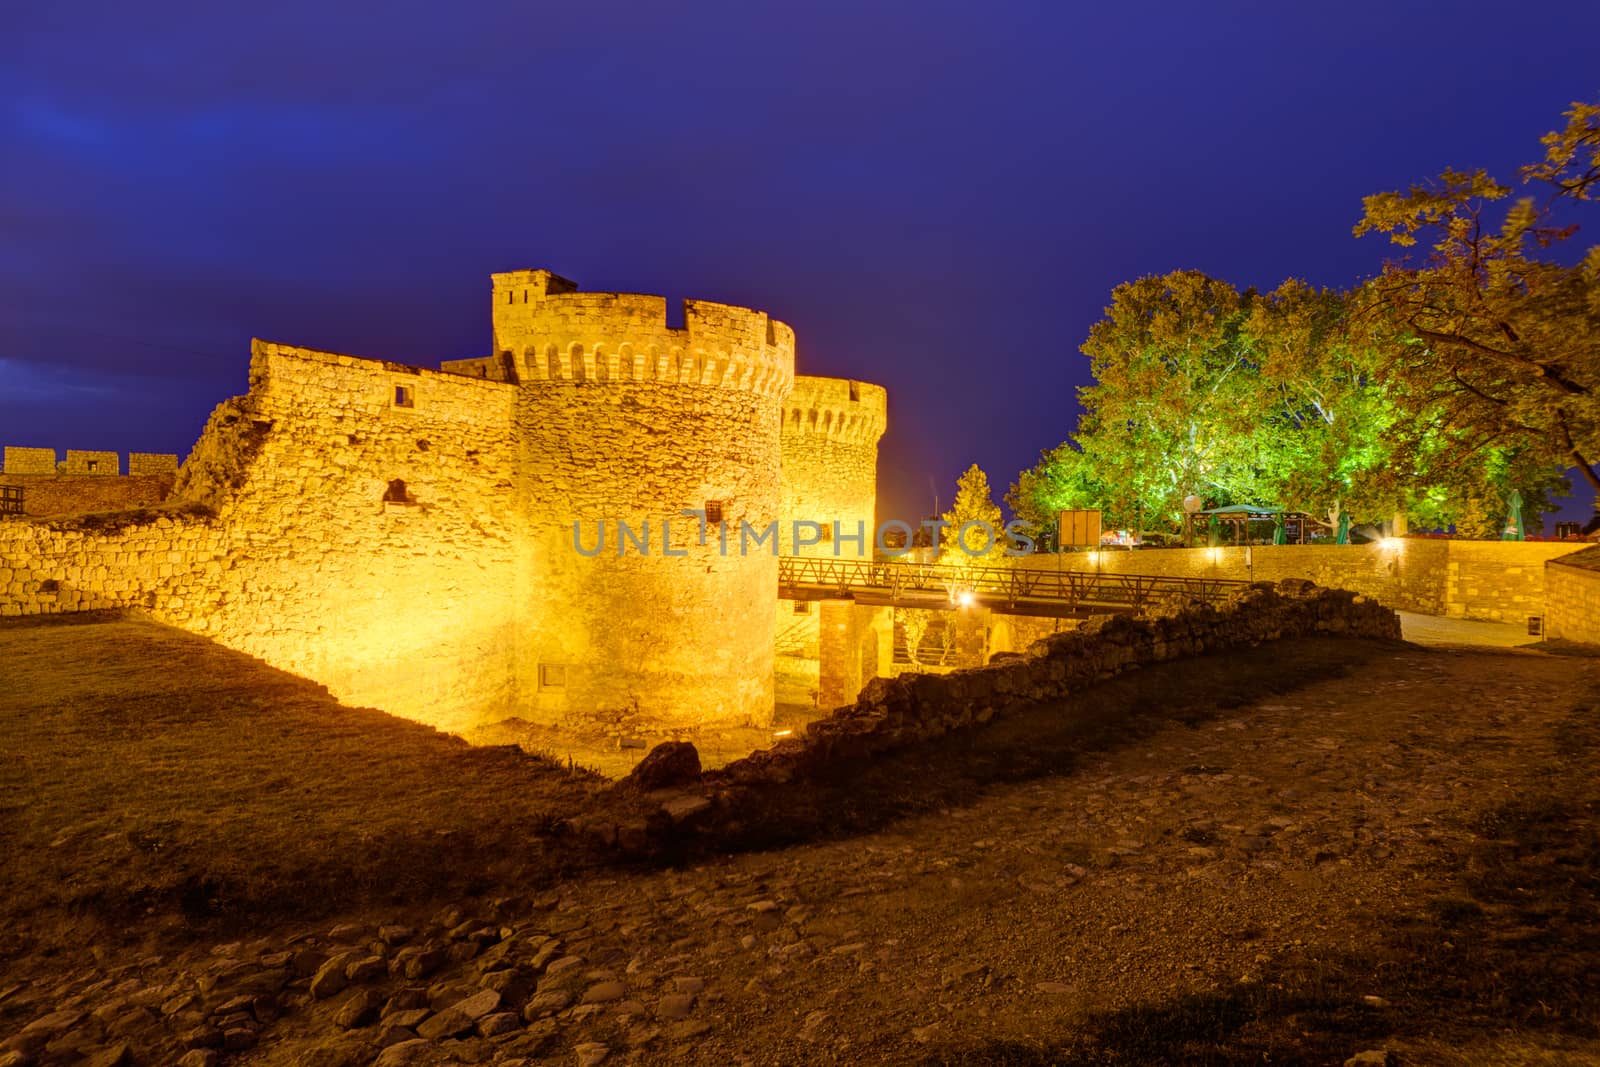 Belgrade fortress at night, Belgrade Serbia